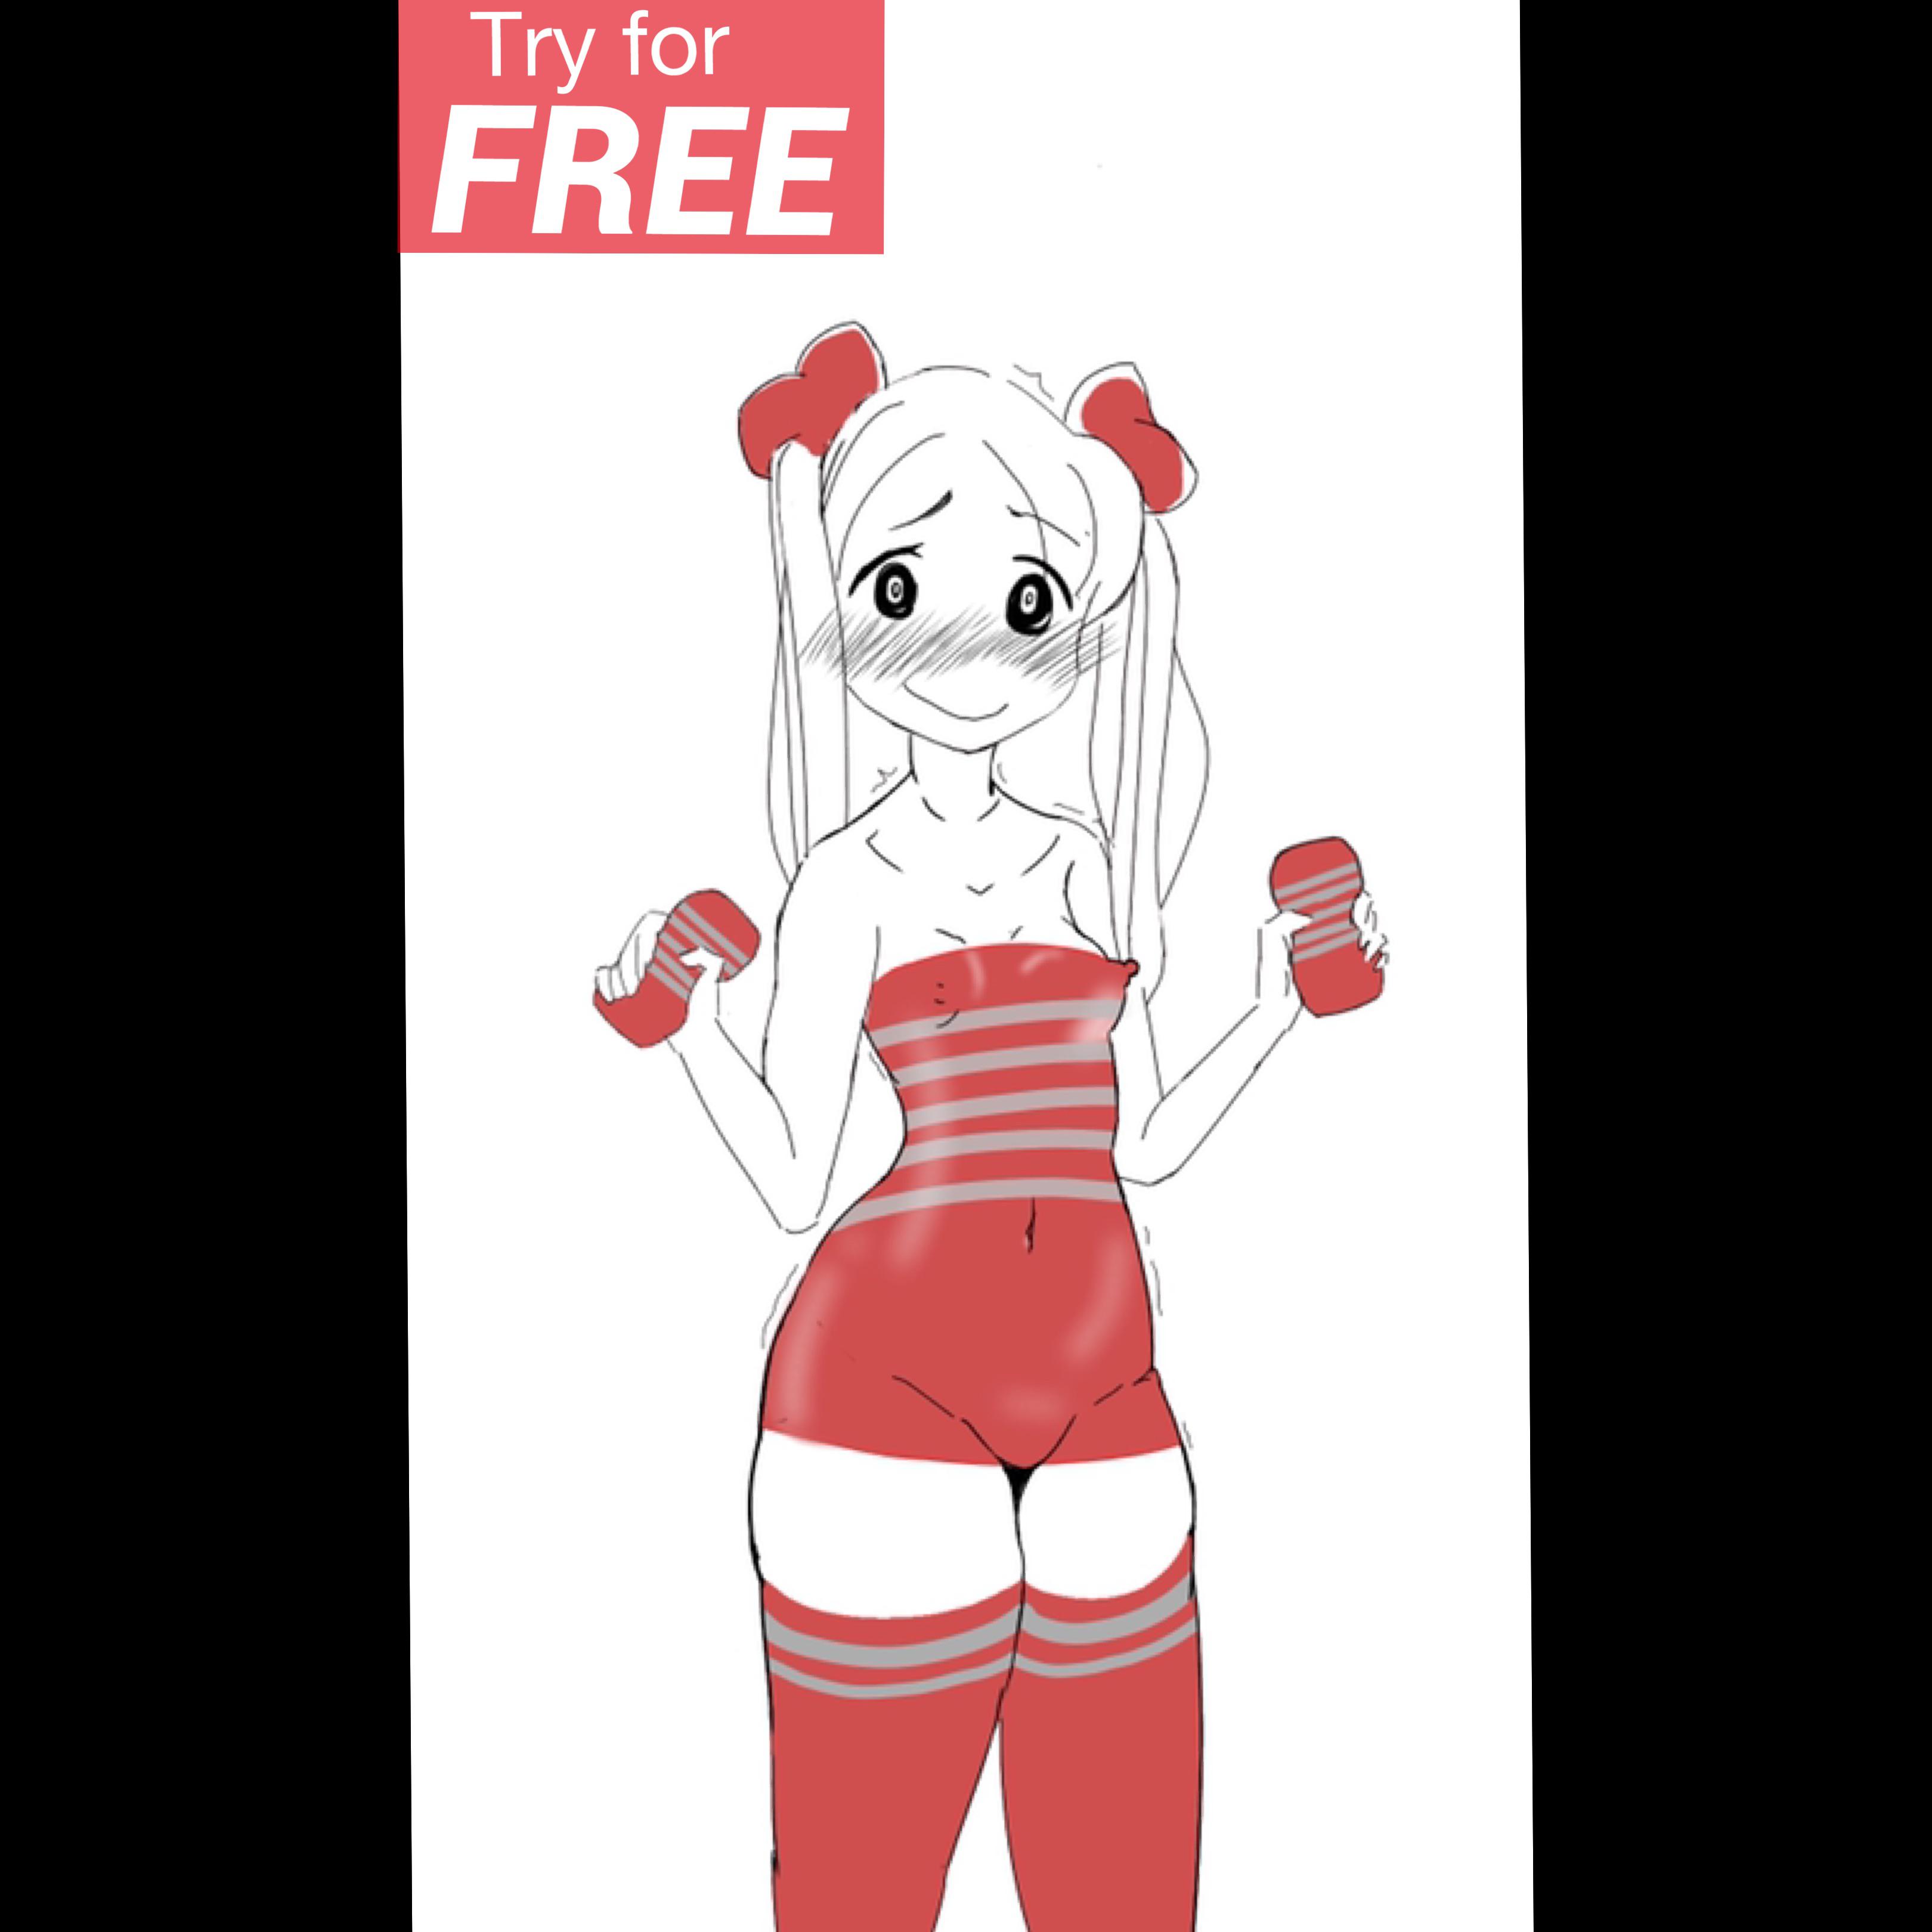 Tenga Girl free demo! (OC)